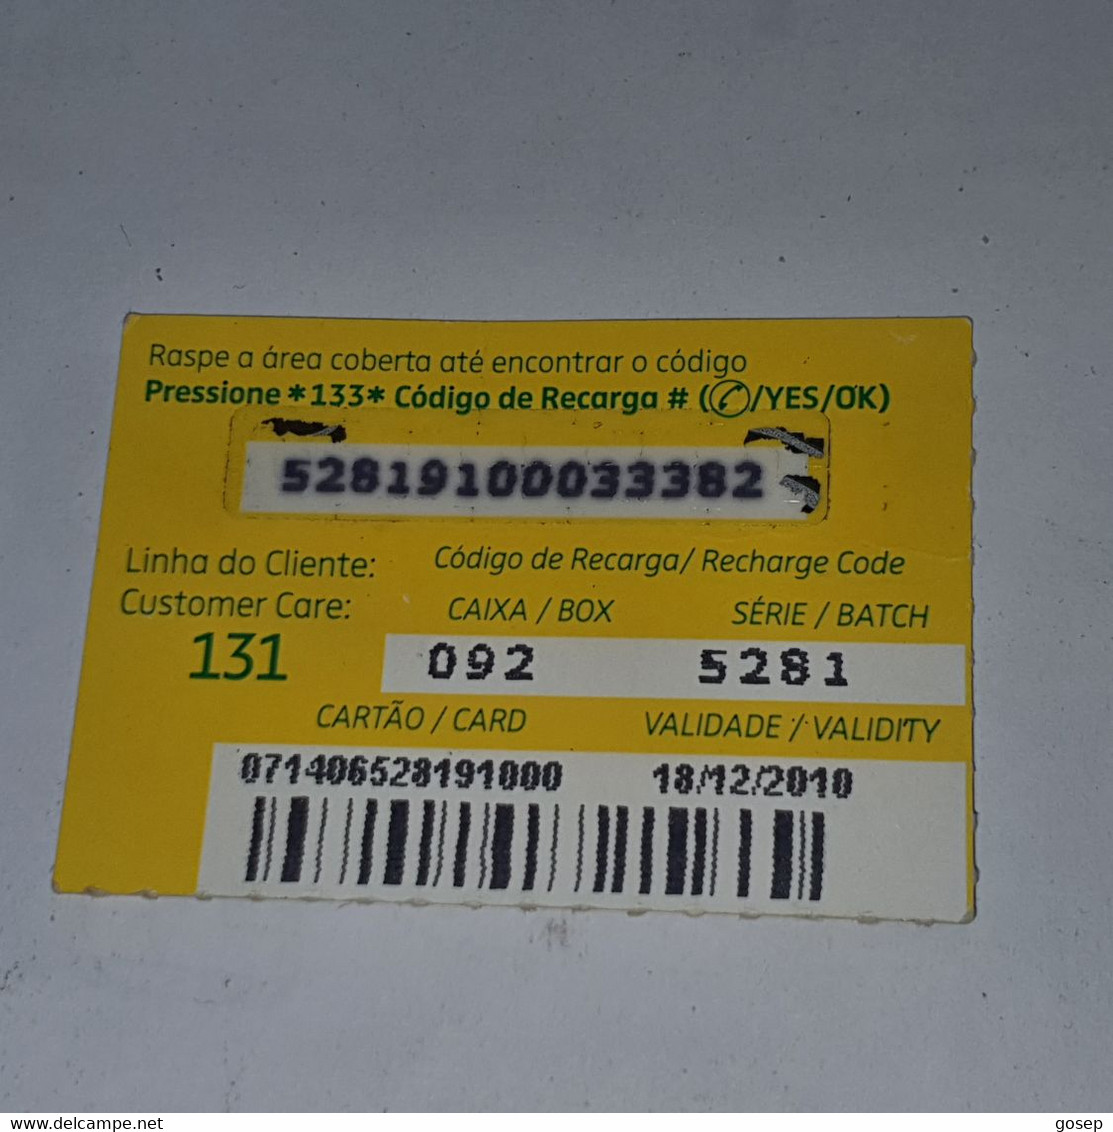 Mozambique-(MZ-MCE-REC-0005)-(11)-Giro De 20-(52819100033382)-(18/12/2010)-used Card - Mozambico